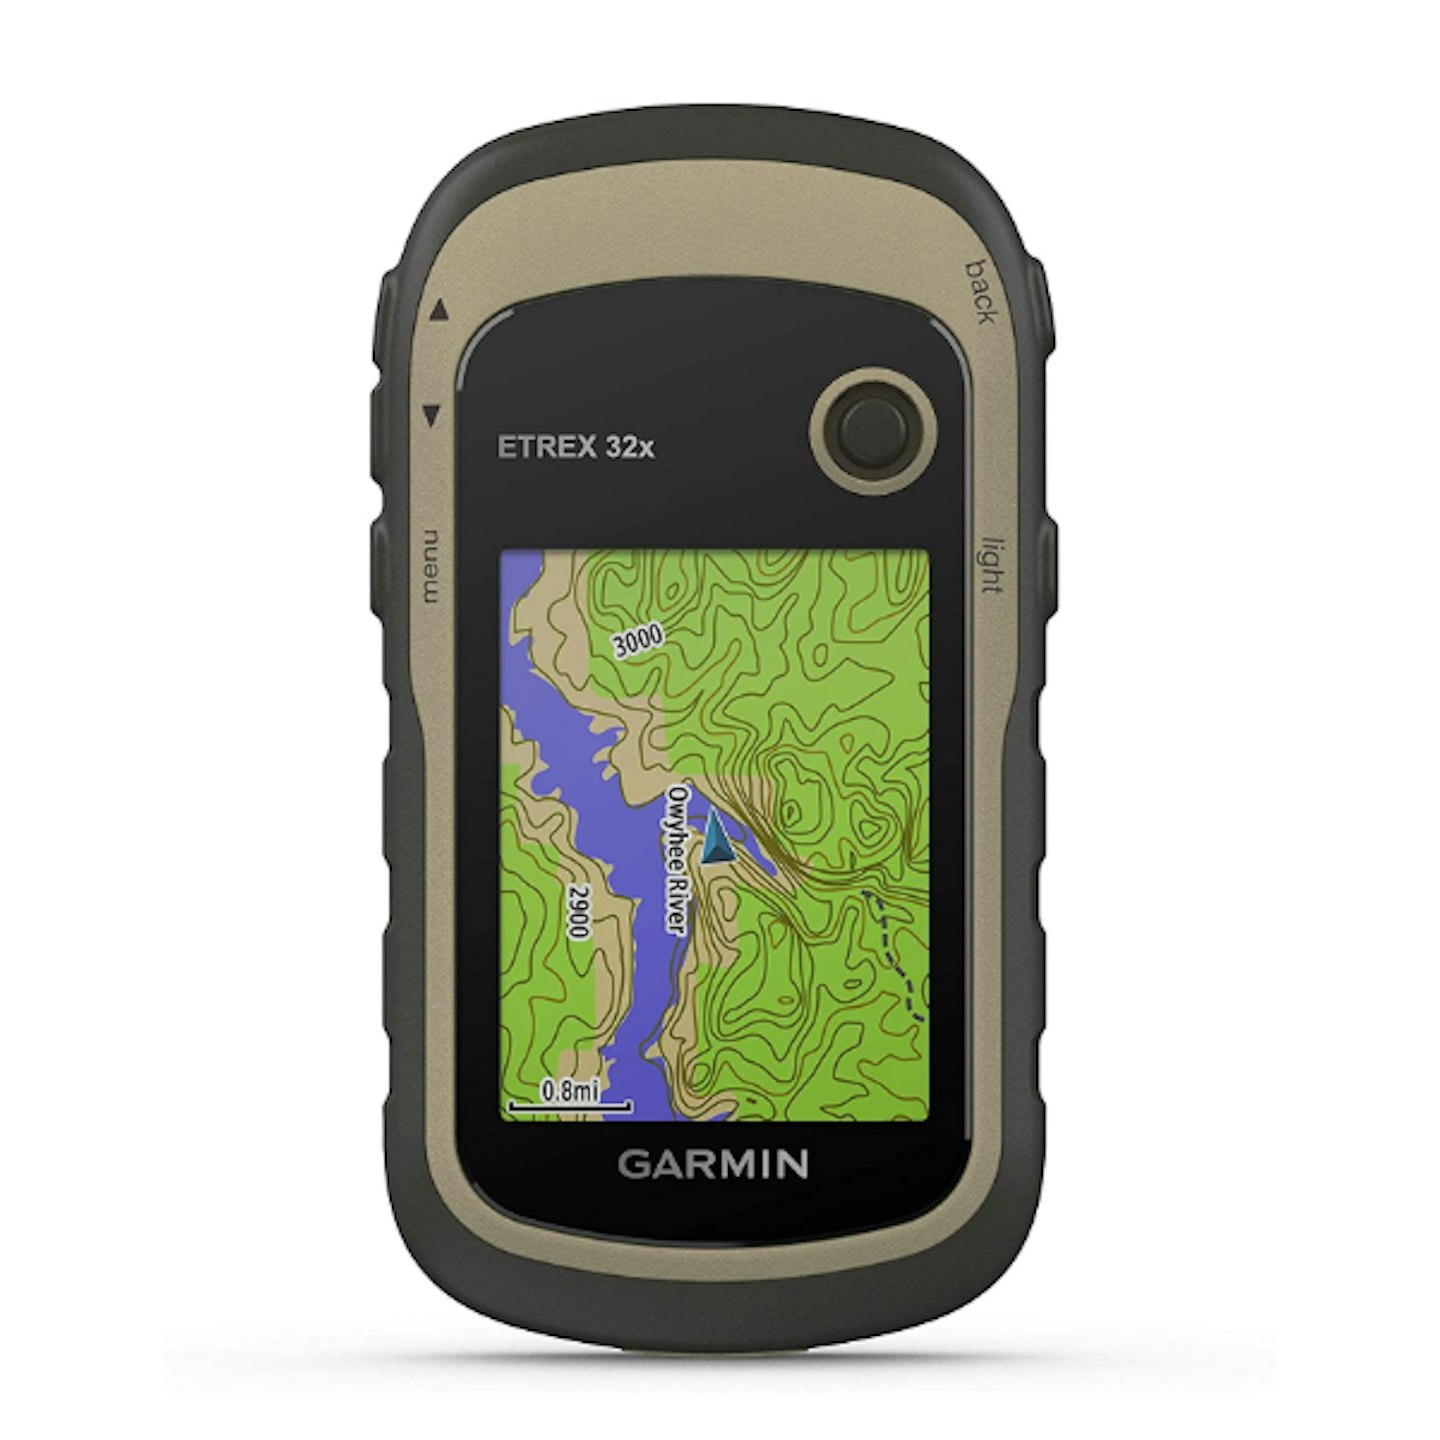 Garmin eTrex 32x Outdoor Handheld GPS